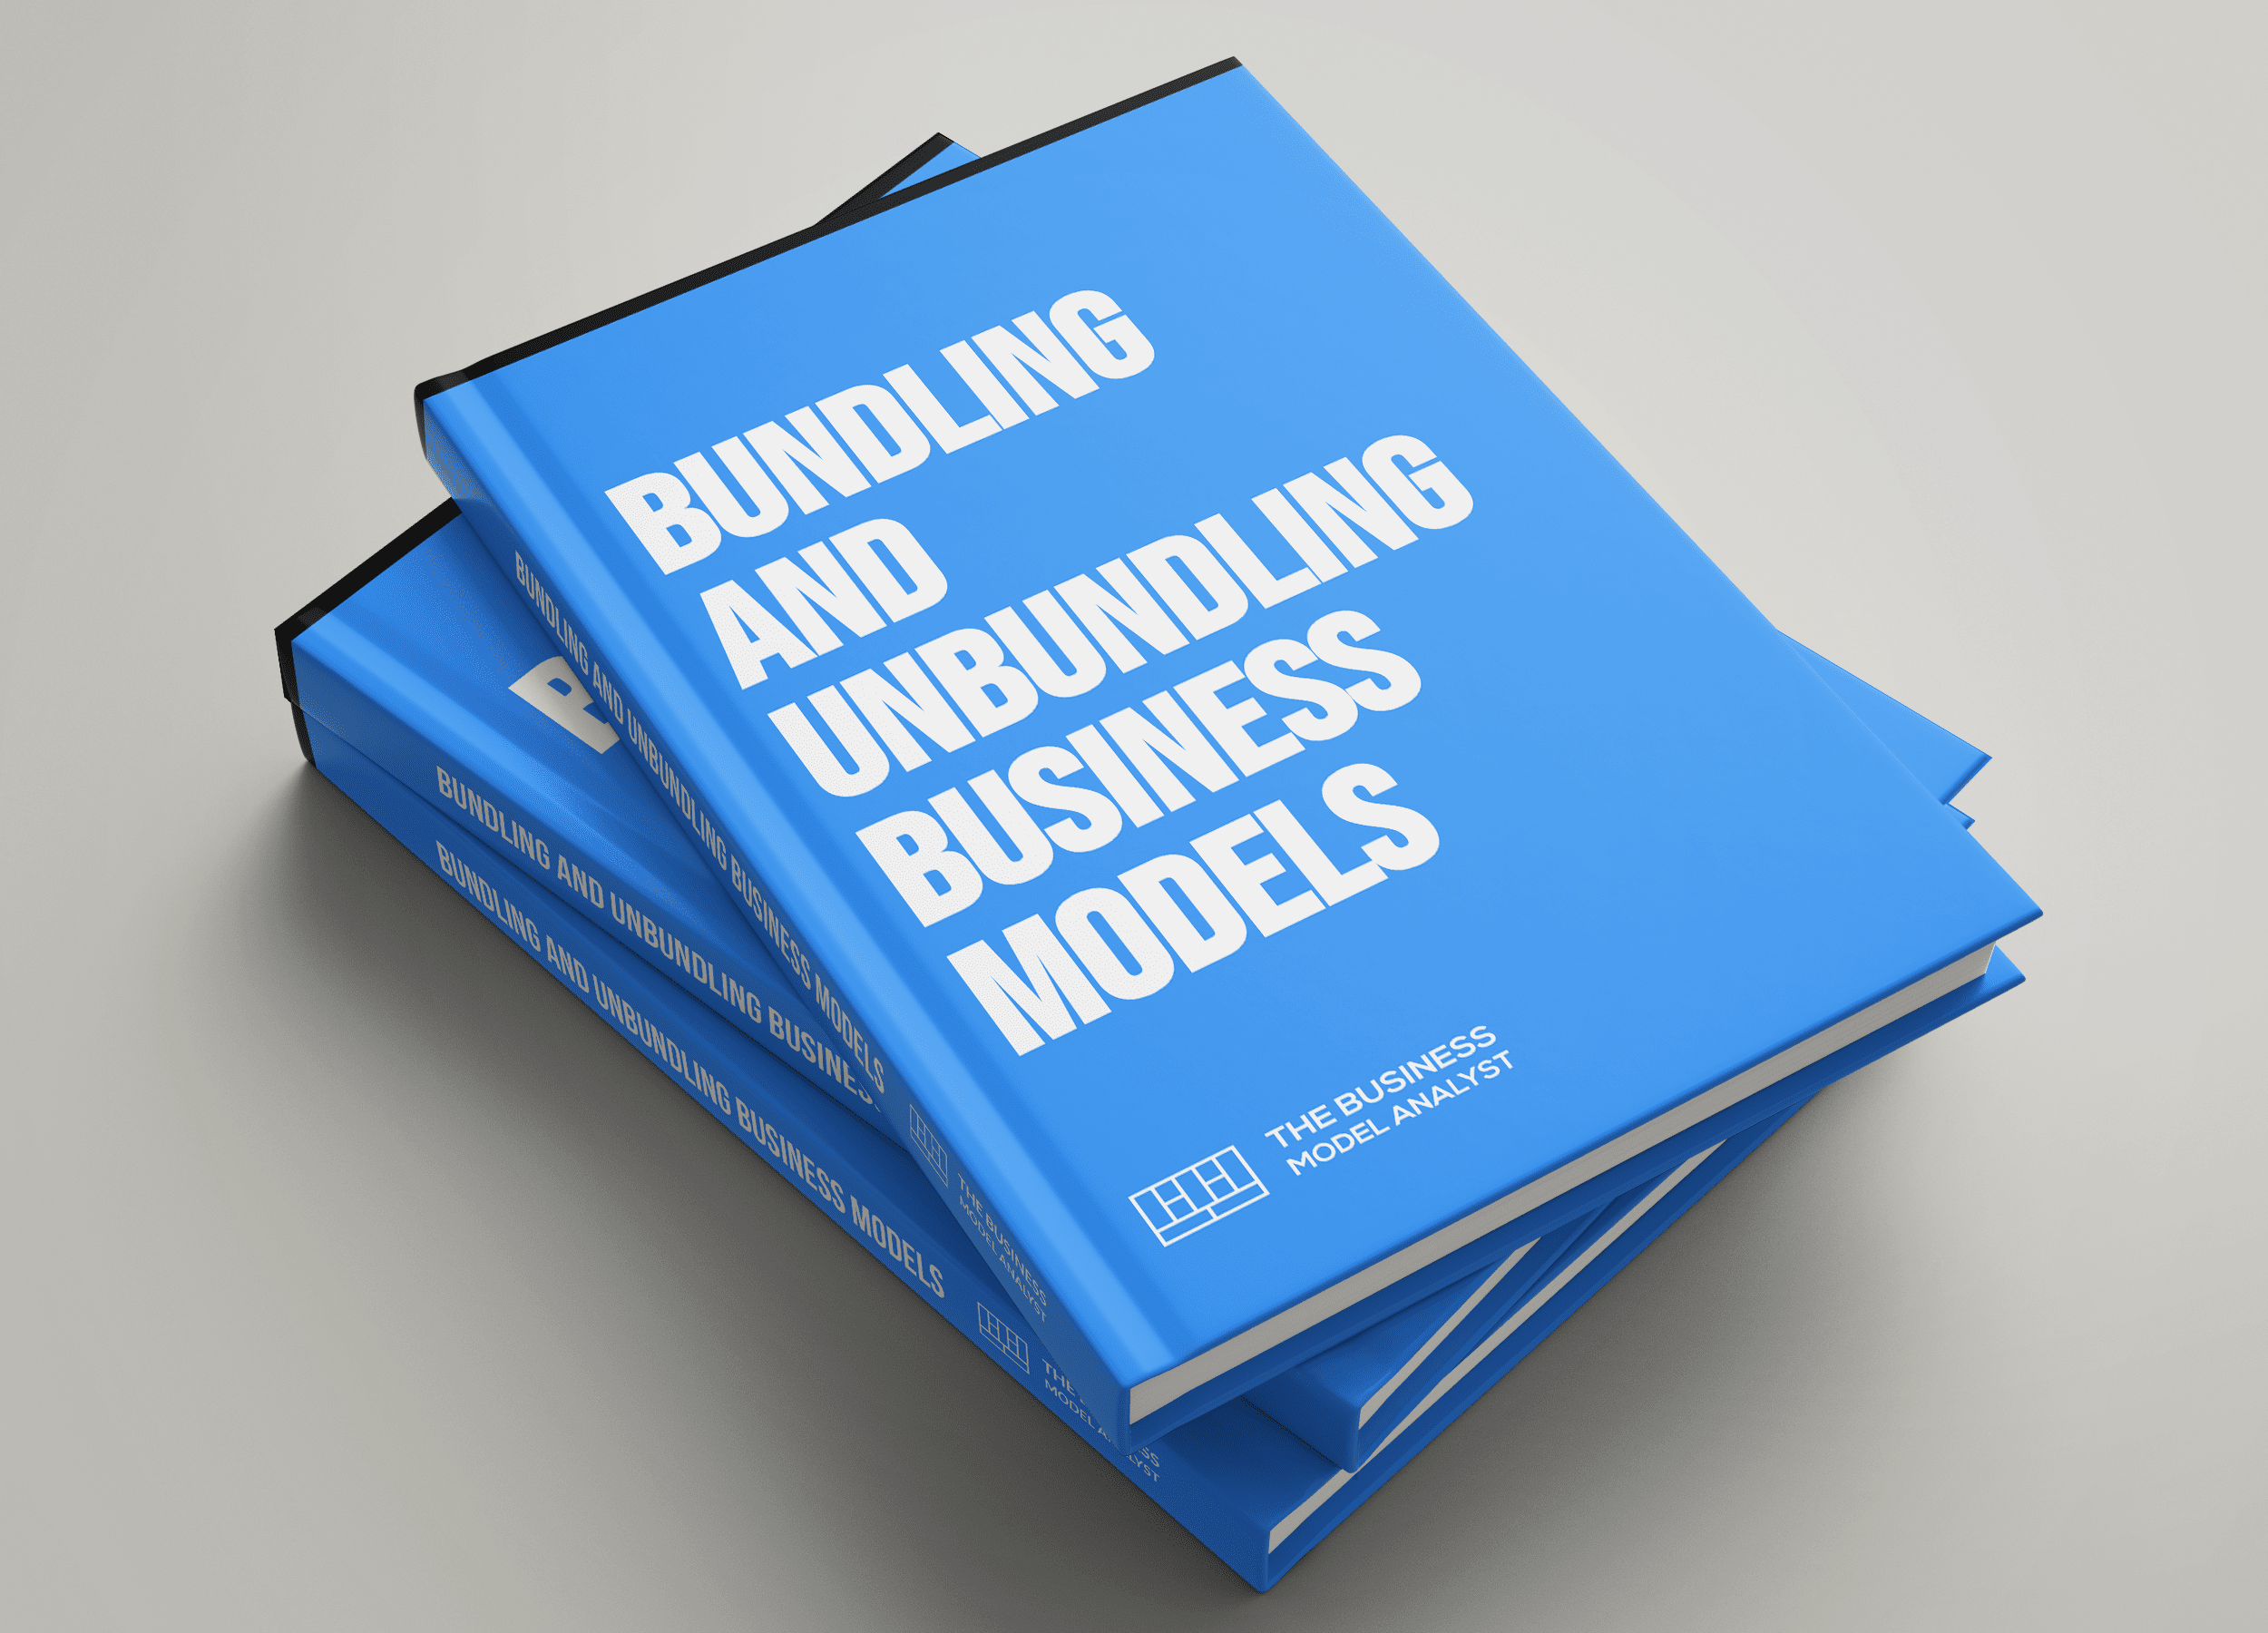 Bundling and Unbundling Business Models Covers